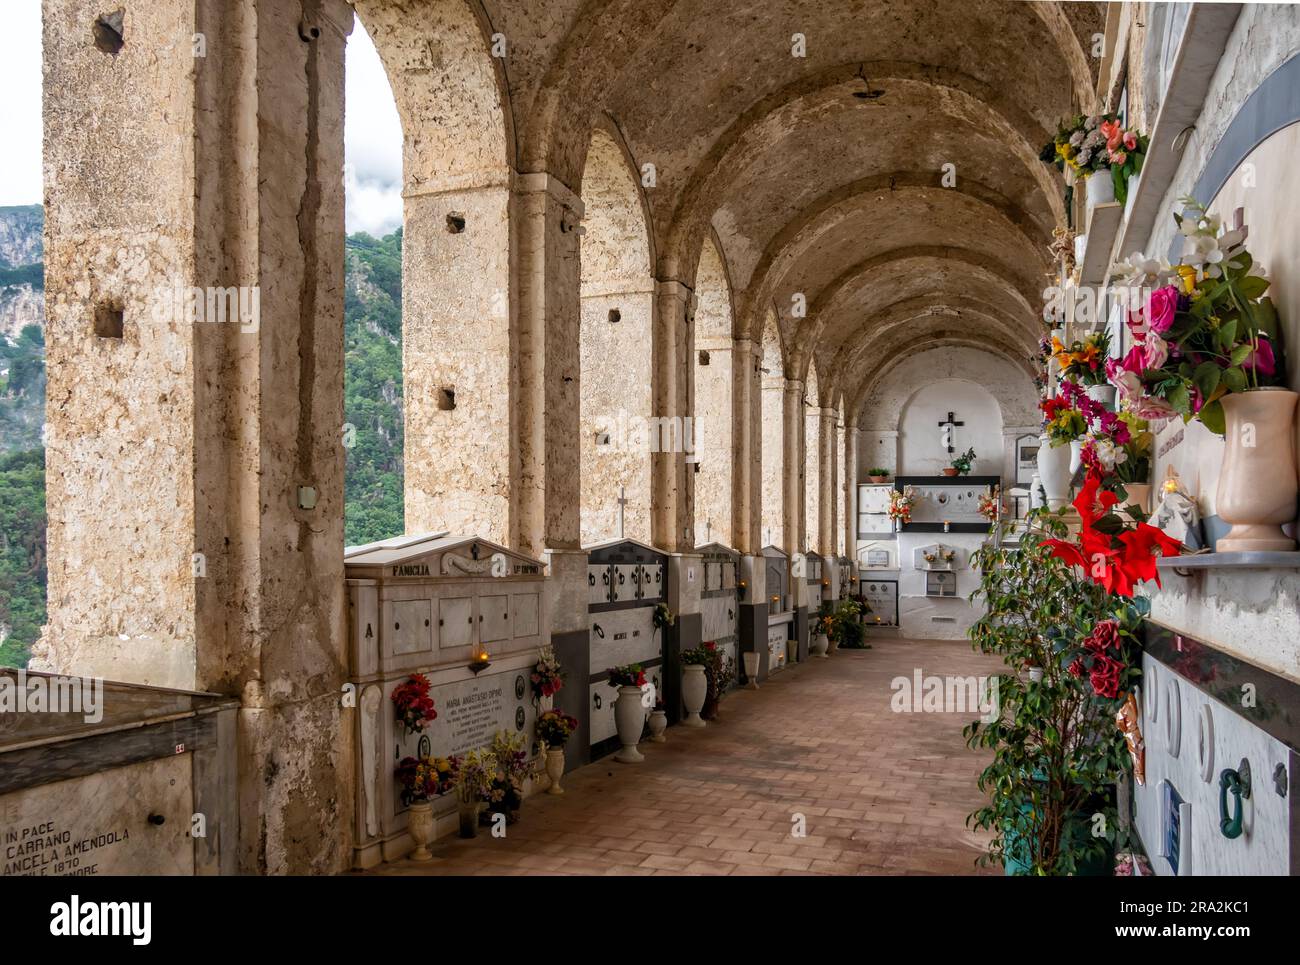 Ammira la navata del famoso cimitero sulla collina sopra Amalfi, Campania, italia Foto Stock